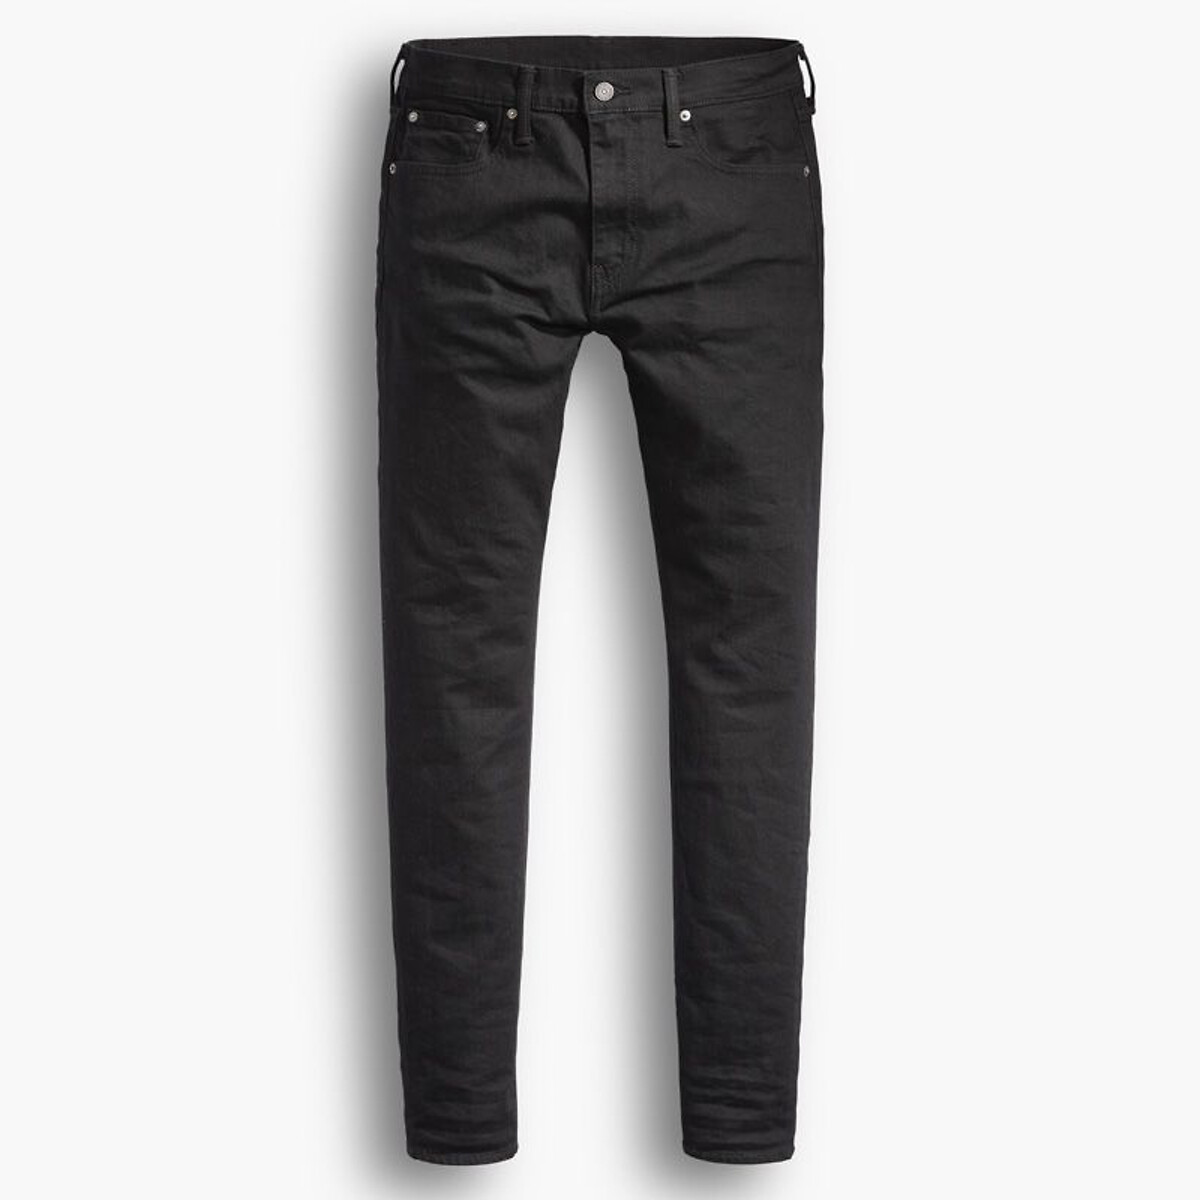 512™ slim taper jeans, mid rise Levi's | La Redoute